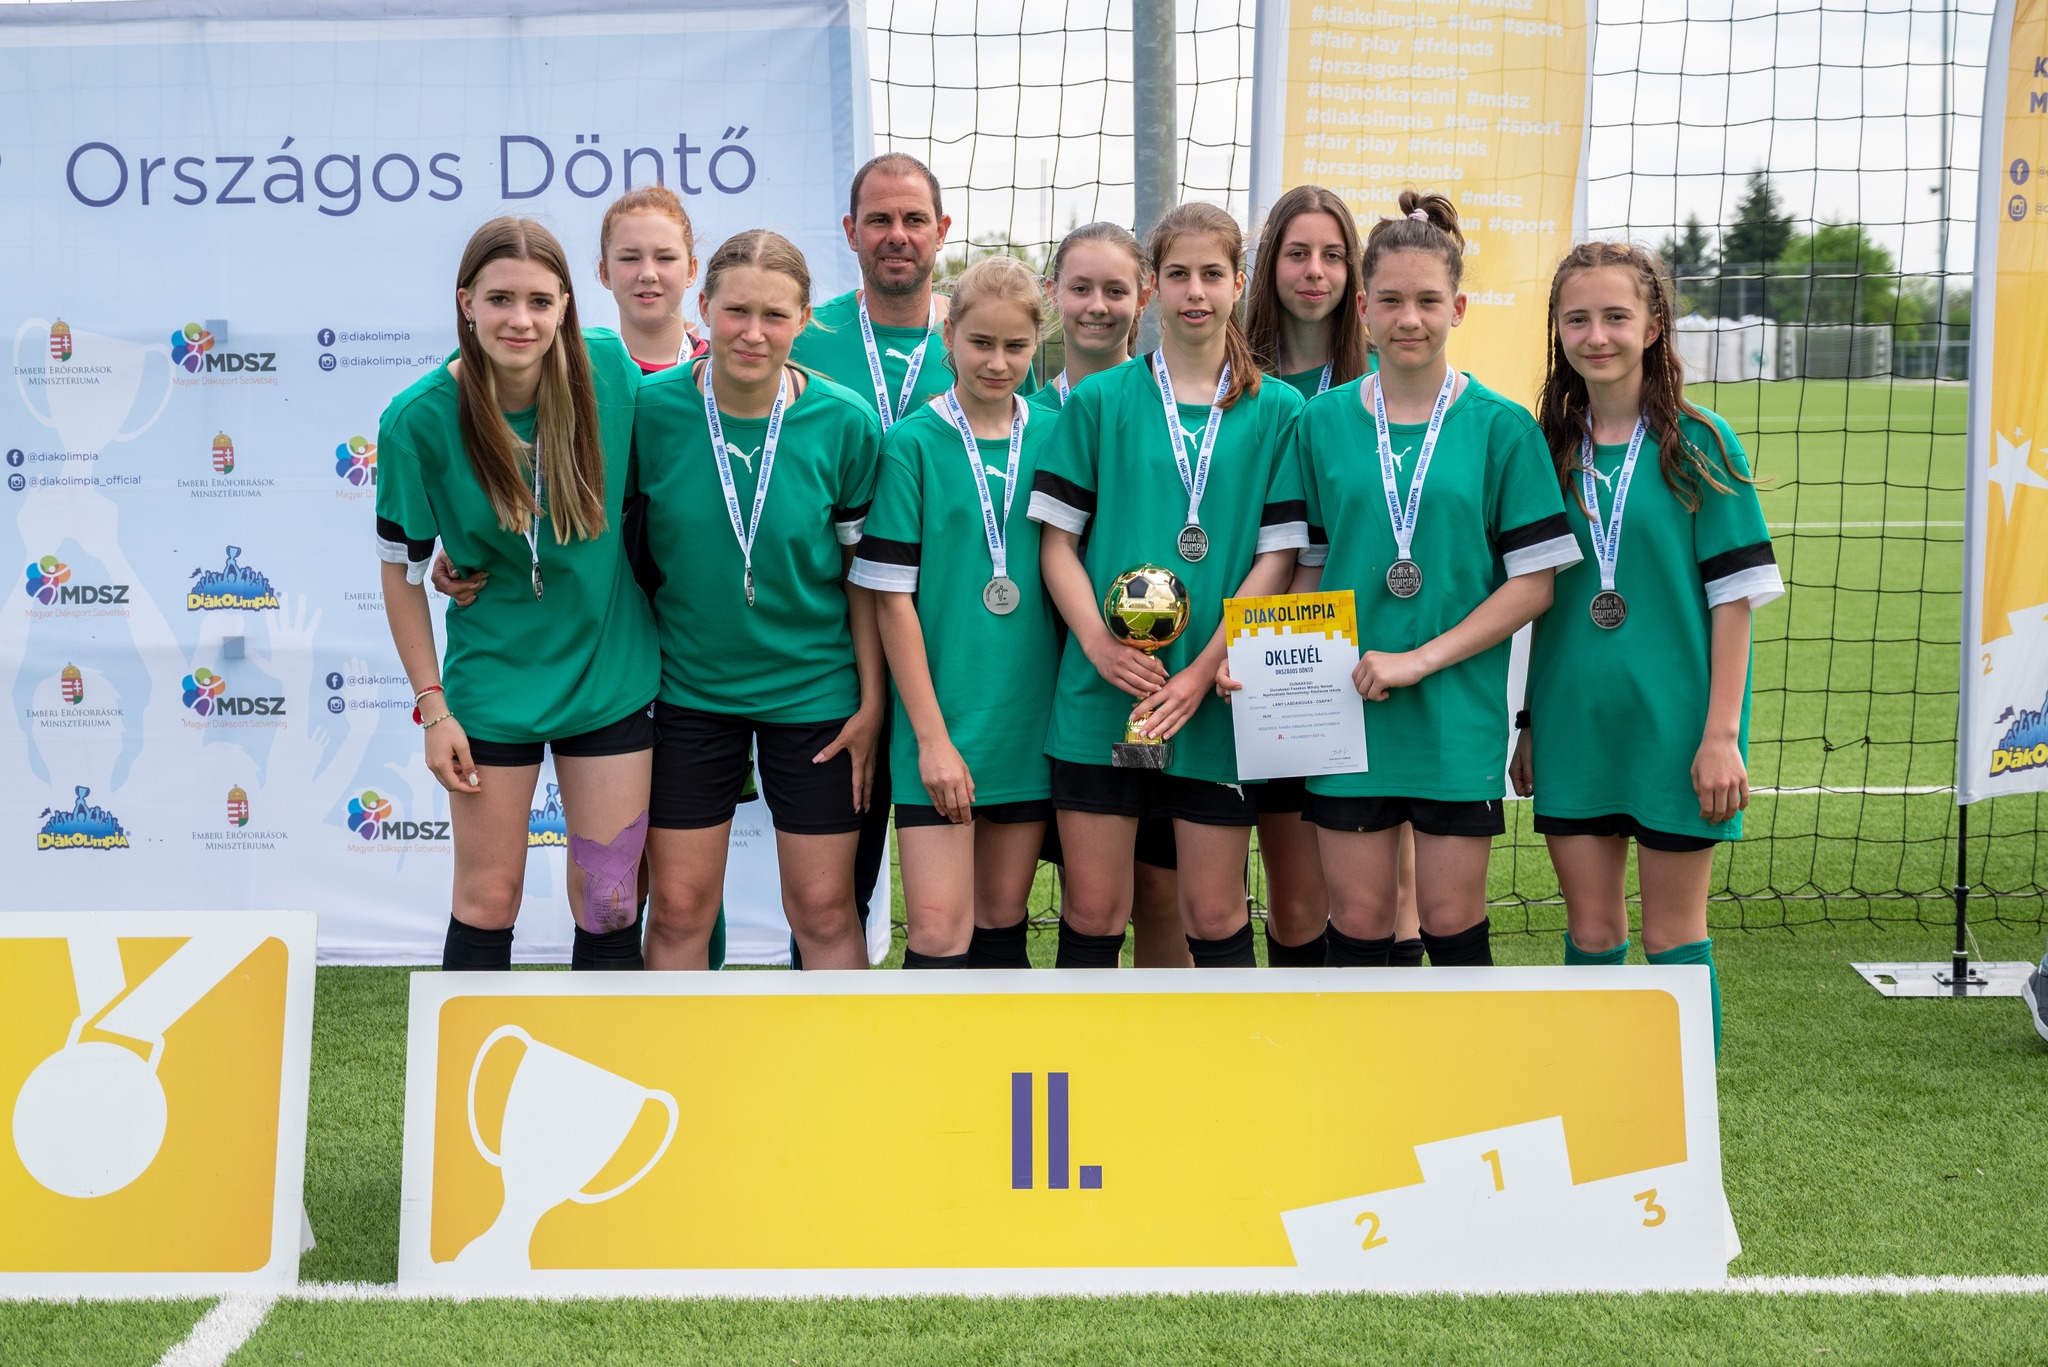 Pest vármegyei labdarúgók sikere az országos döntőn